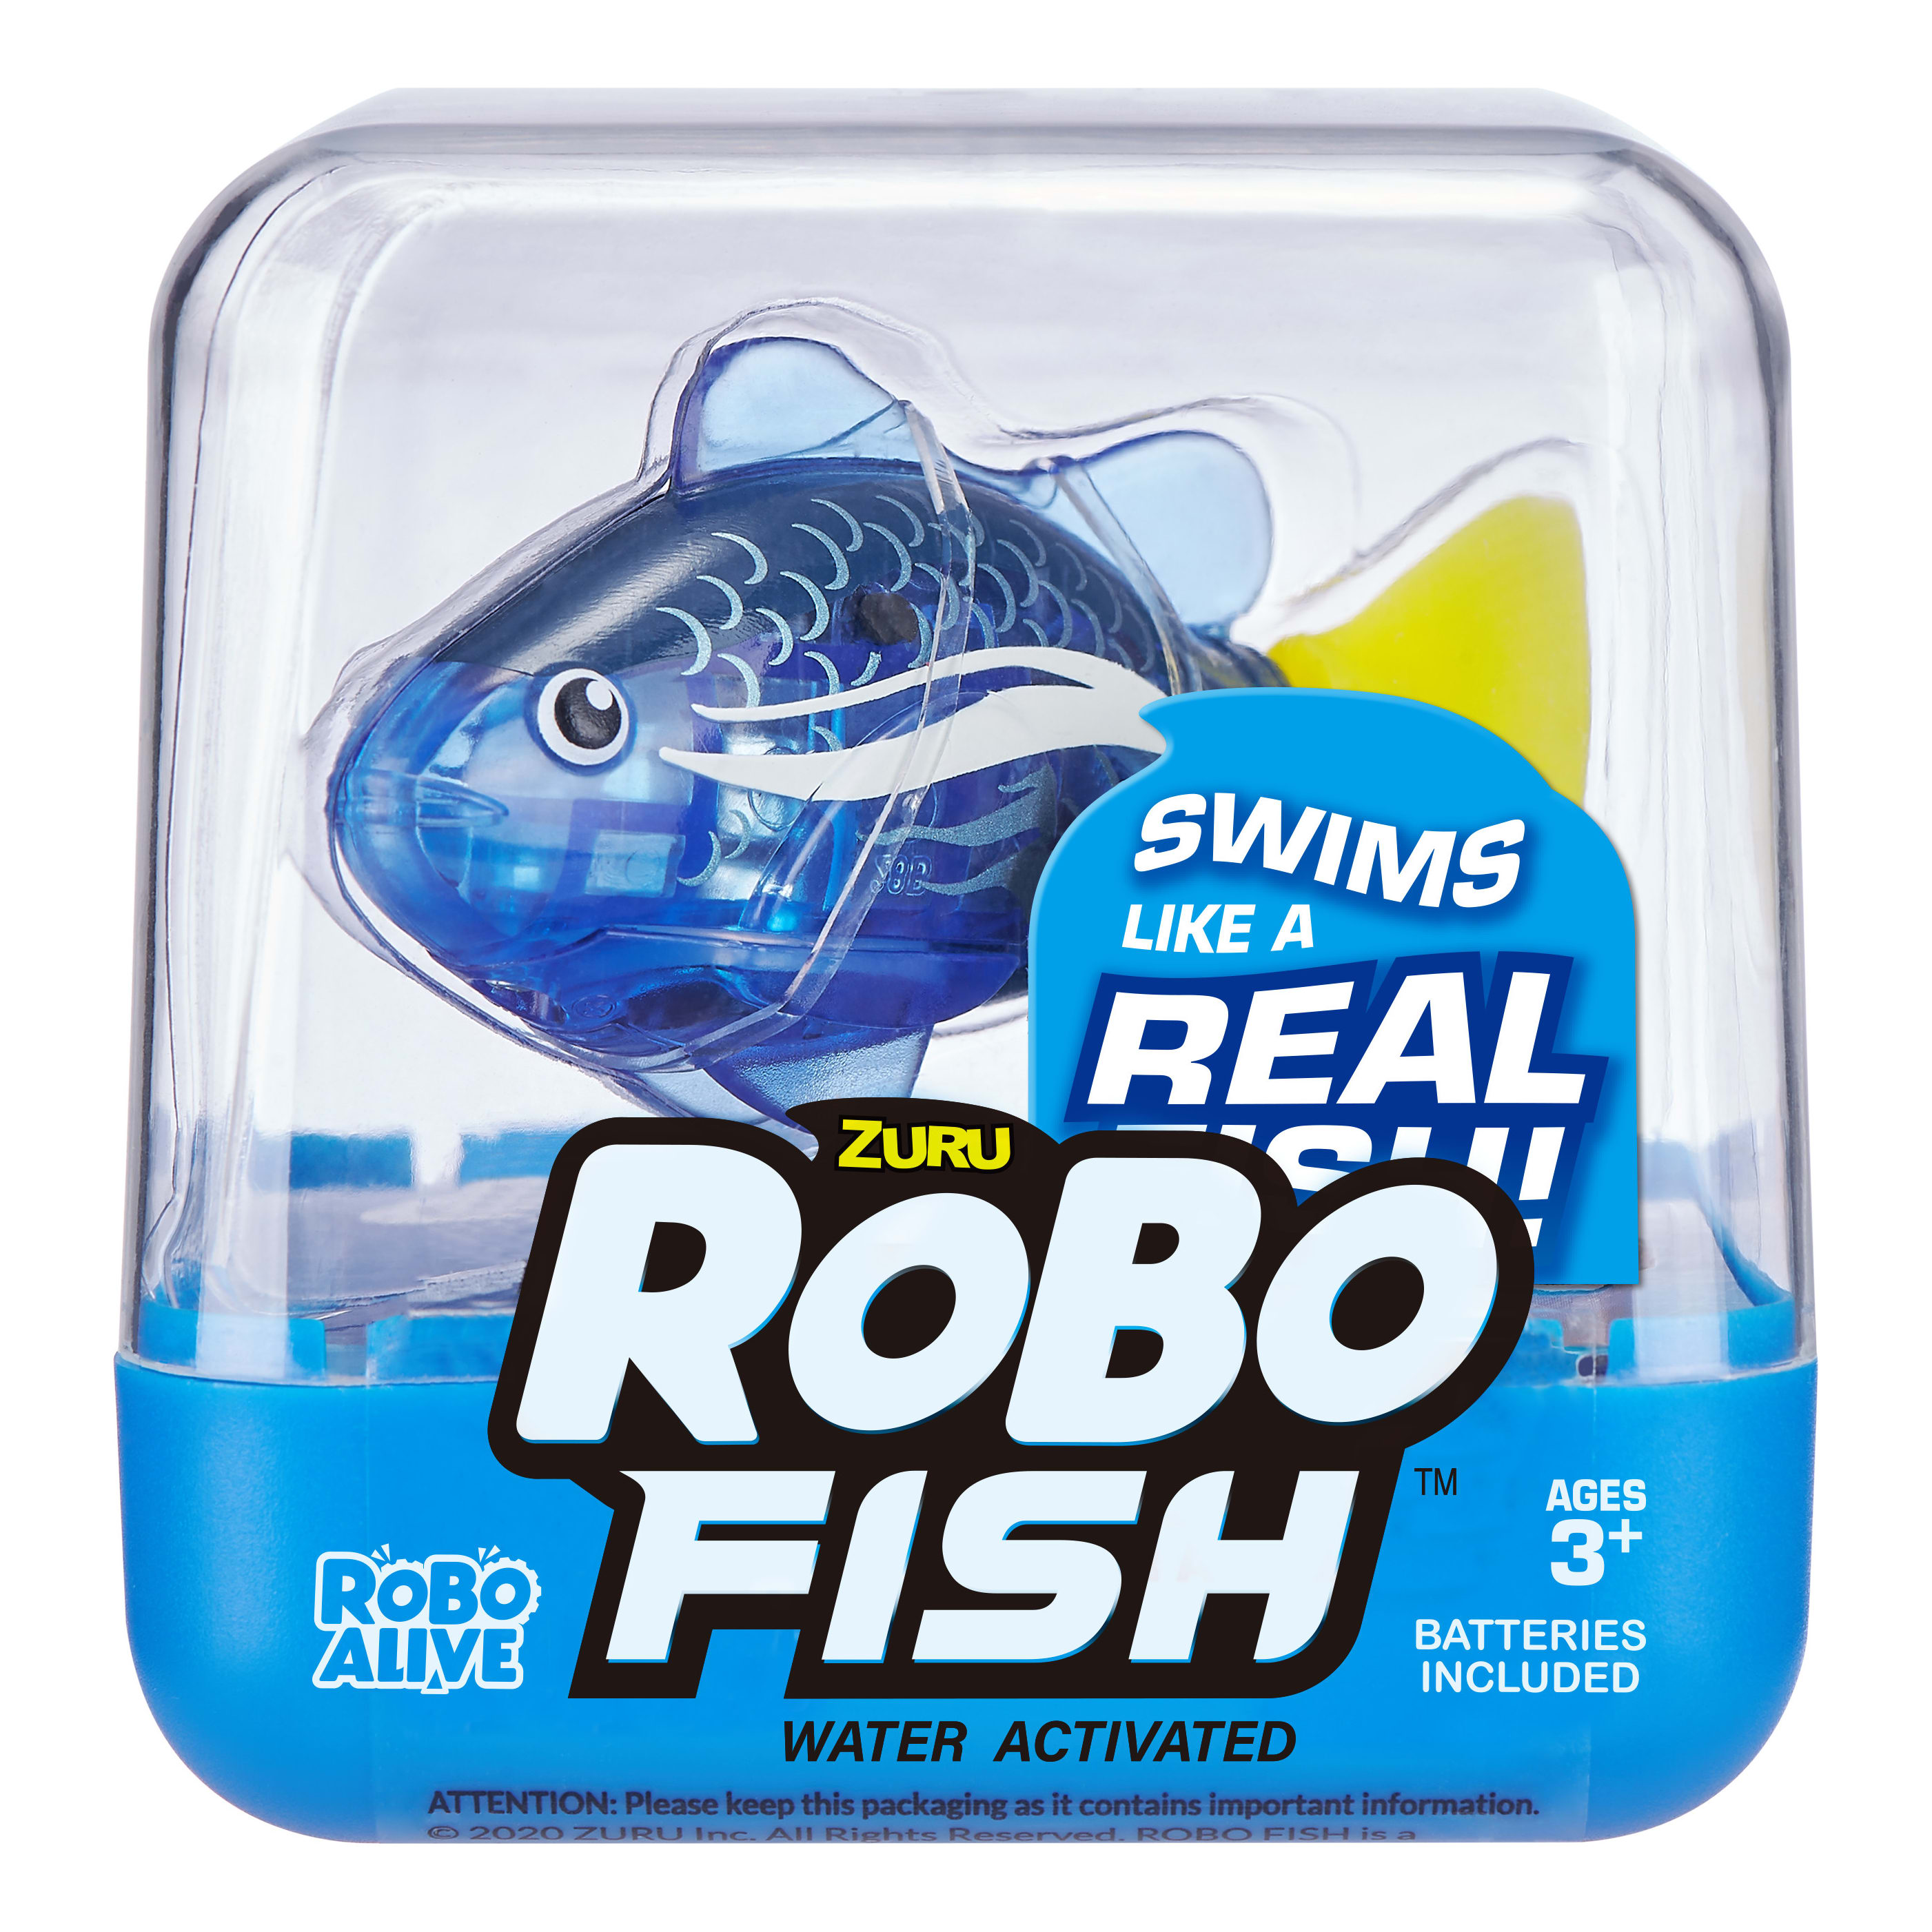 Zuru Robo Fish Robotic Swimming Fish